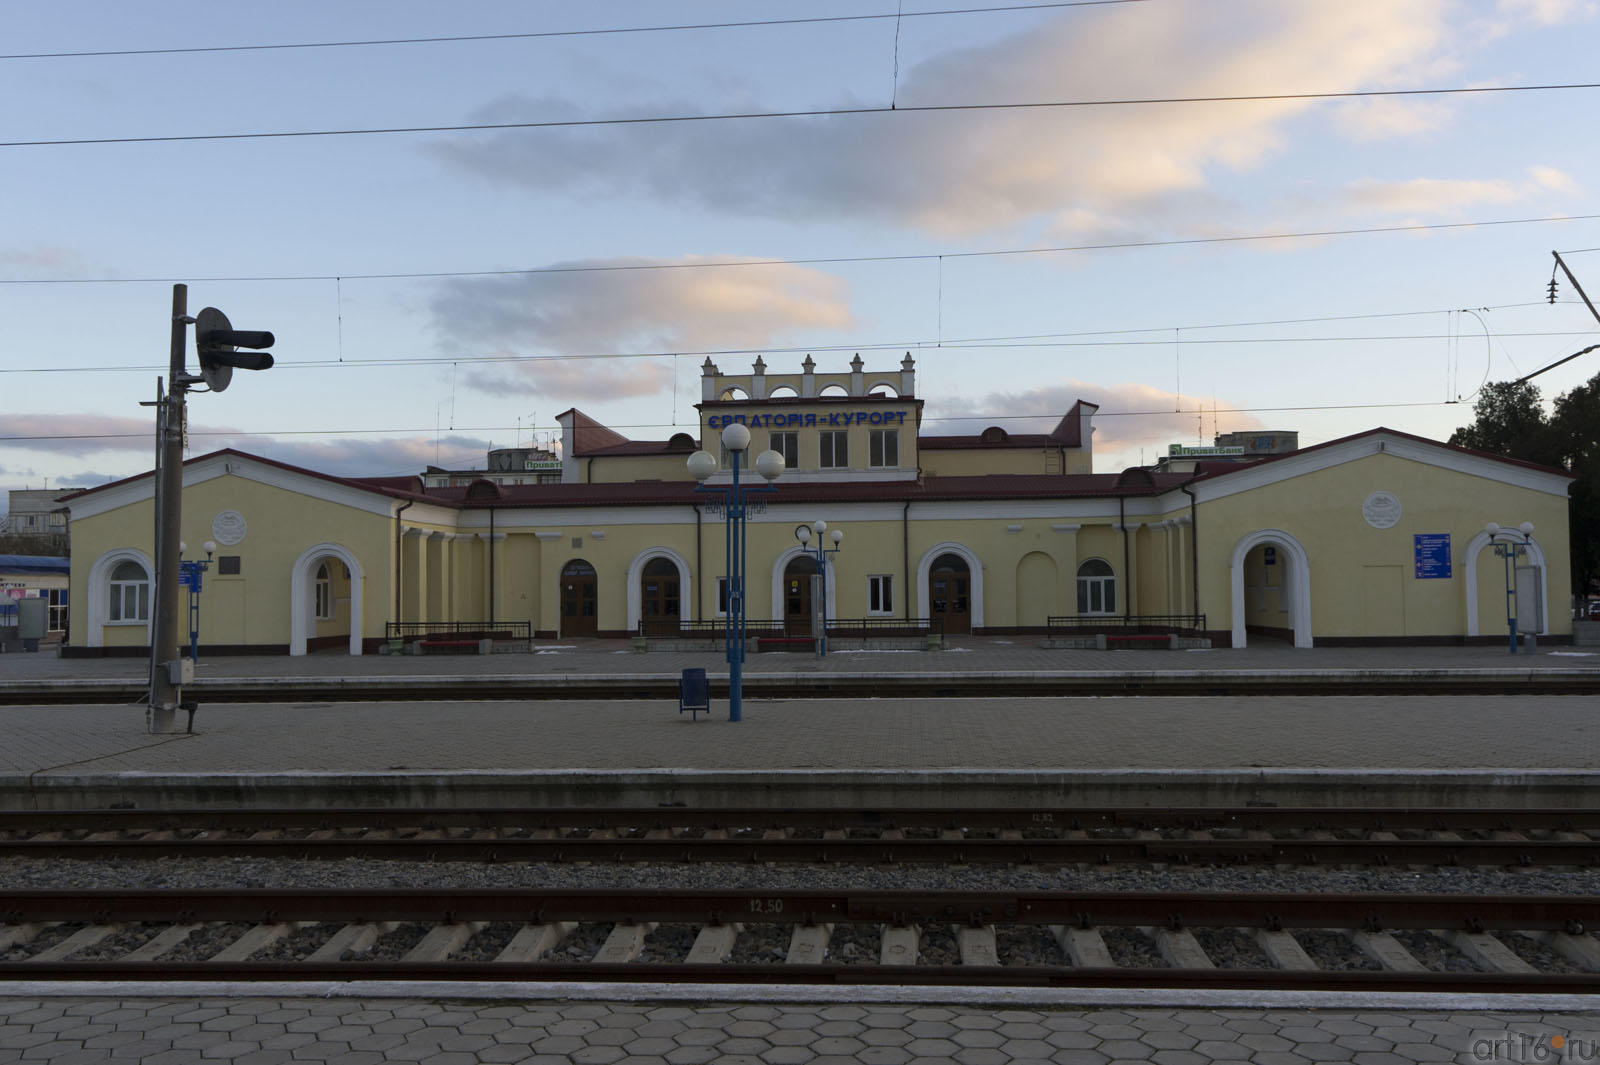 Железнодорожный вокзал Евпатории  из окна электропоезда::Евпатория